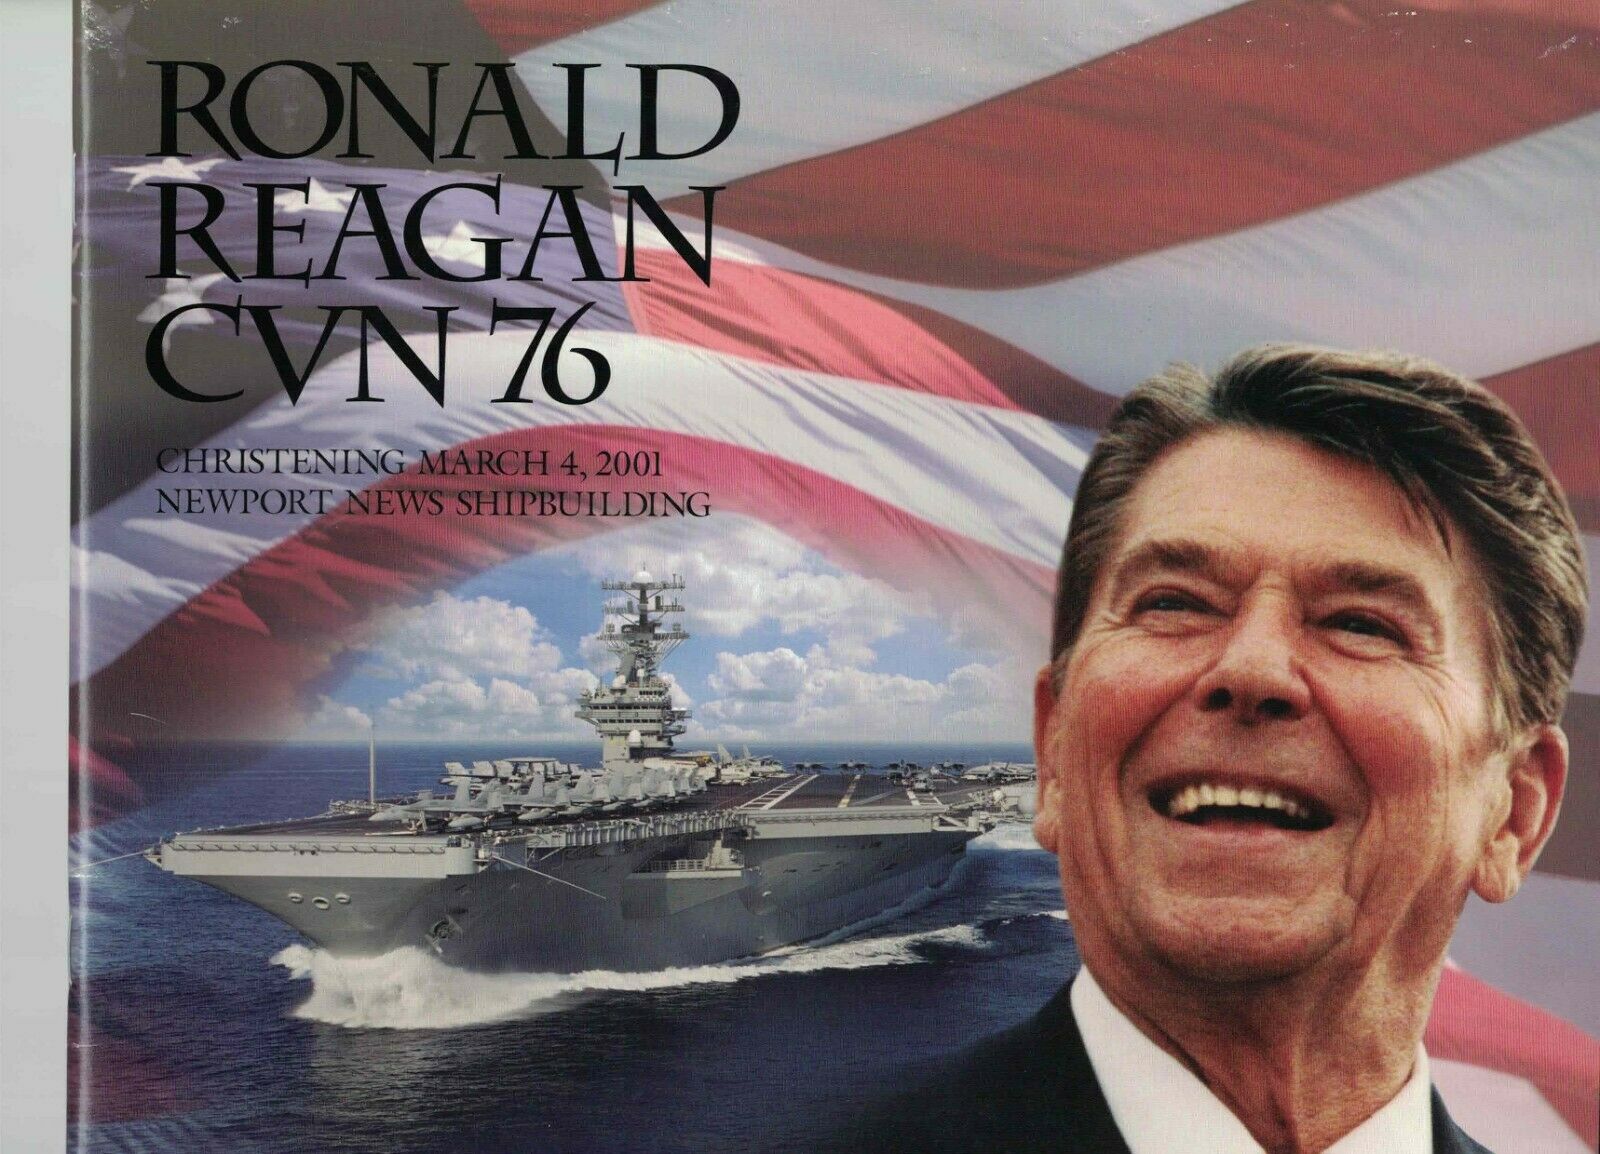 Nuclear Aircraft Carrier Uss Ronald Reagan Cvn 76 Christening Program - 2001